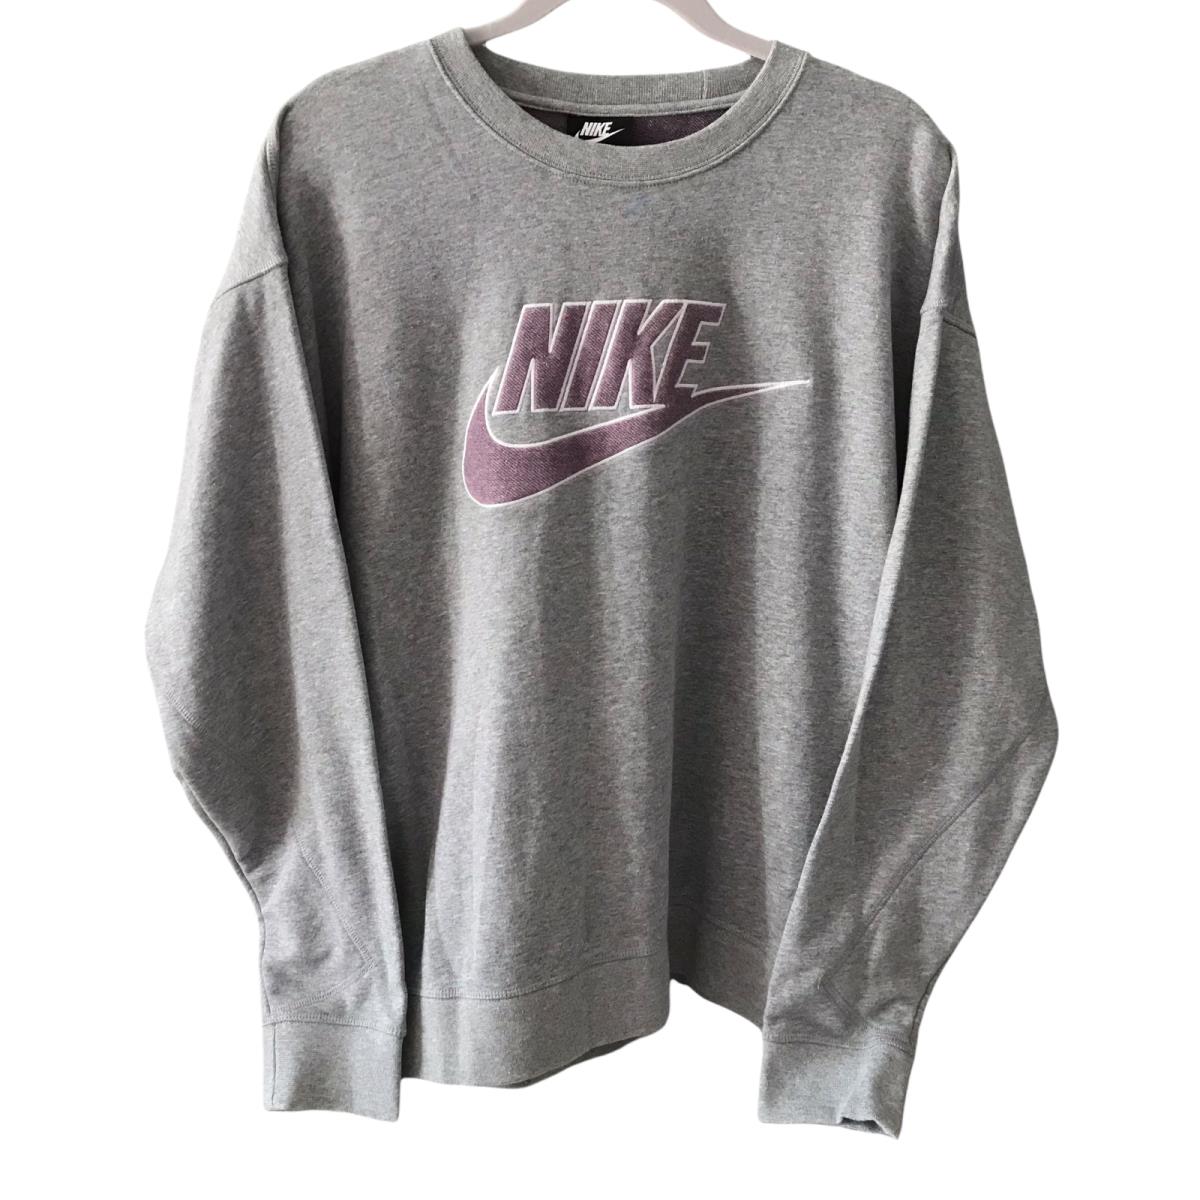 Nike Sportswear Crew Sweatshirt Pullover Men s SZ Large Gray CU4507-063